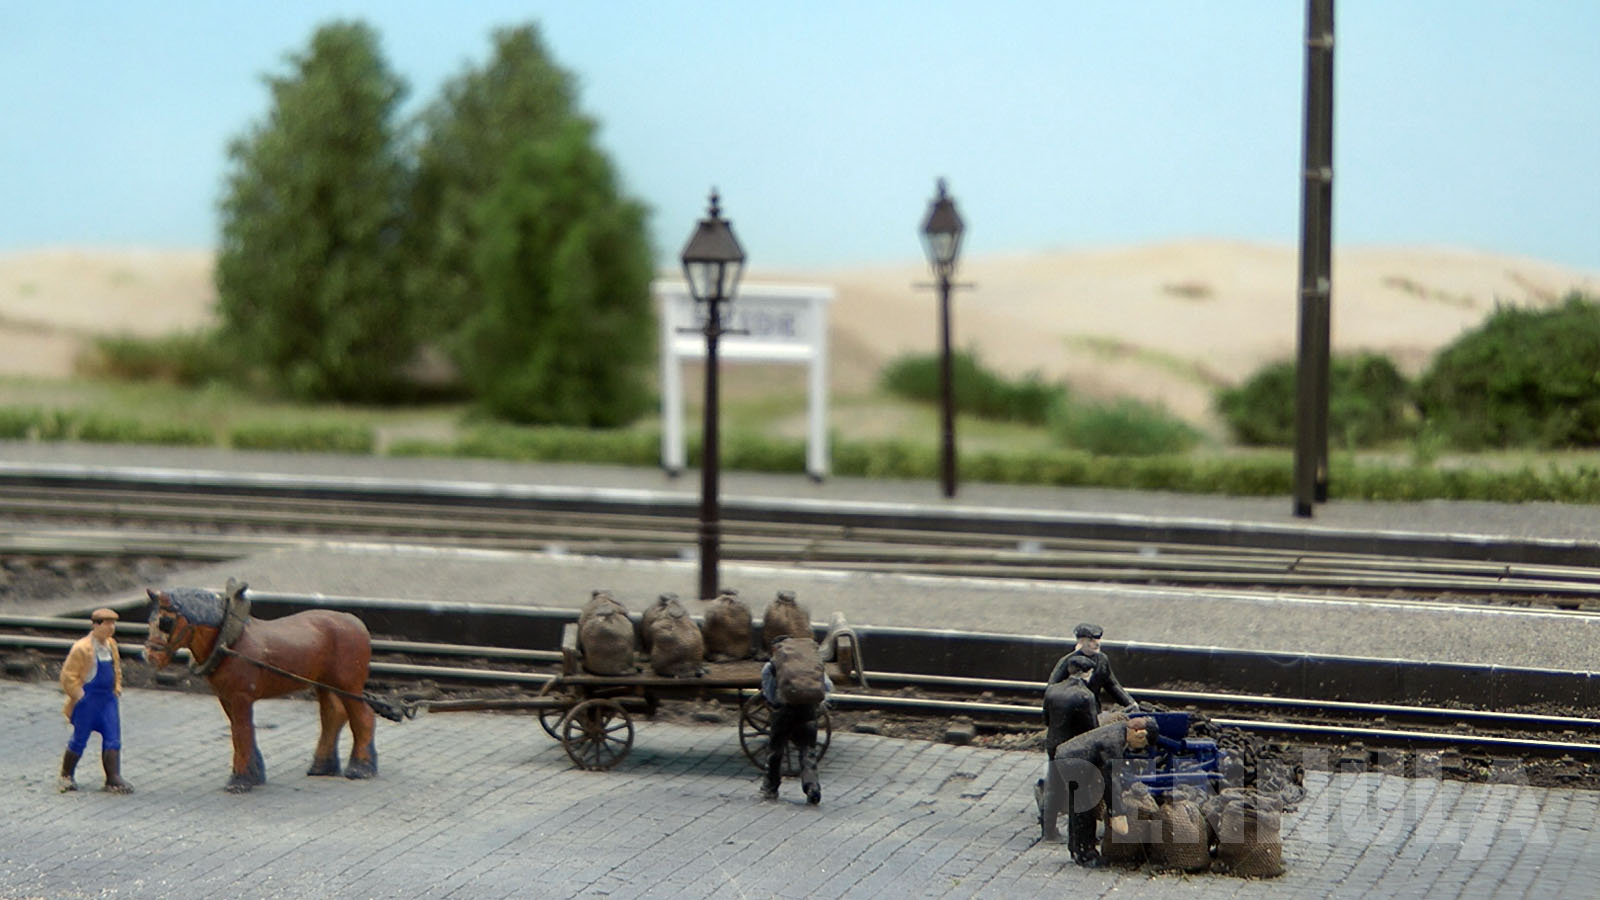 Die Modellbahnanlage in Spur H0 ist so gestaltet, dass der Beginn des 20. Jahrhunderts dargestellt wird, als noch Dampfloks und Güterzüge, die von Dampflokomotiven gezogen wurden, die Betriebsabläufe der Eisenbahn bestimmten.